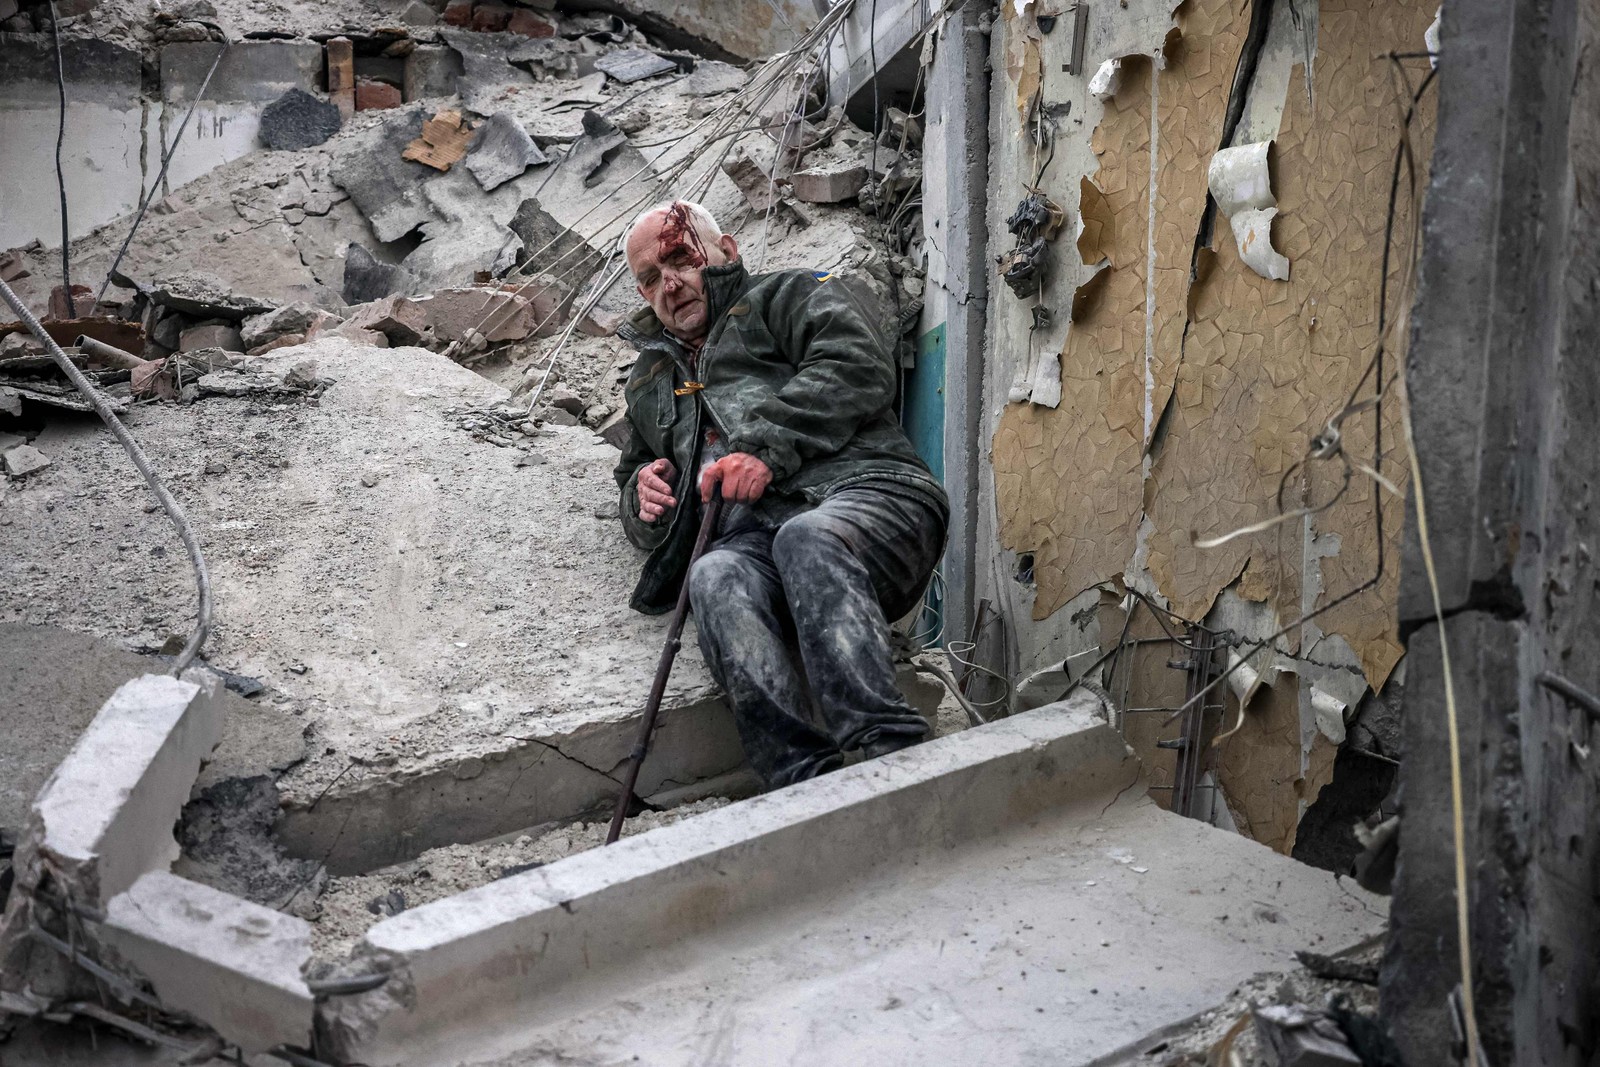 Pessoas que moram na região onde ficava a construção relataram o pânico após perceberem que um ataque era realizado no local — Foto: Anatolii Stepanov / AFP